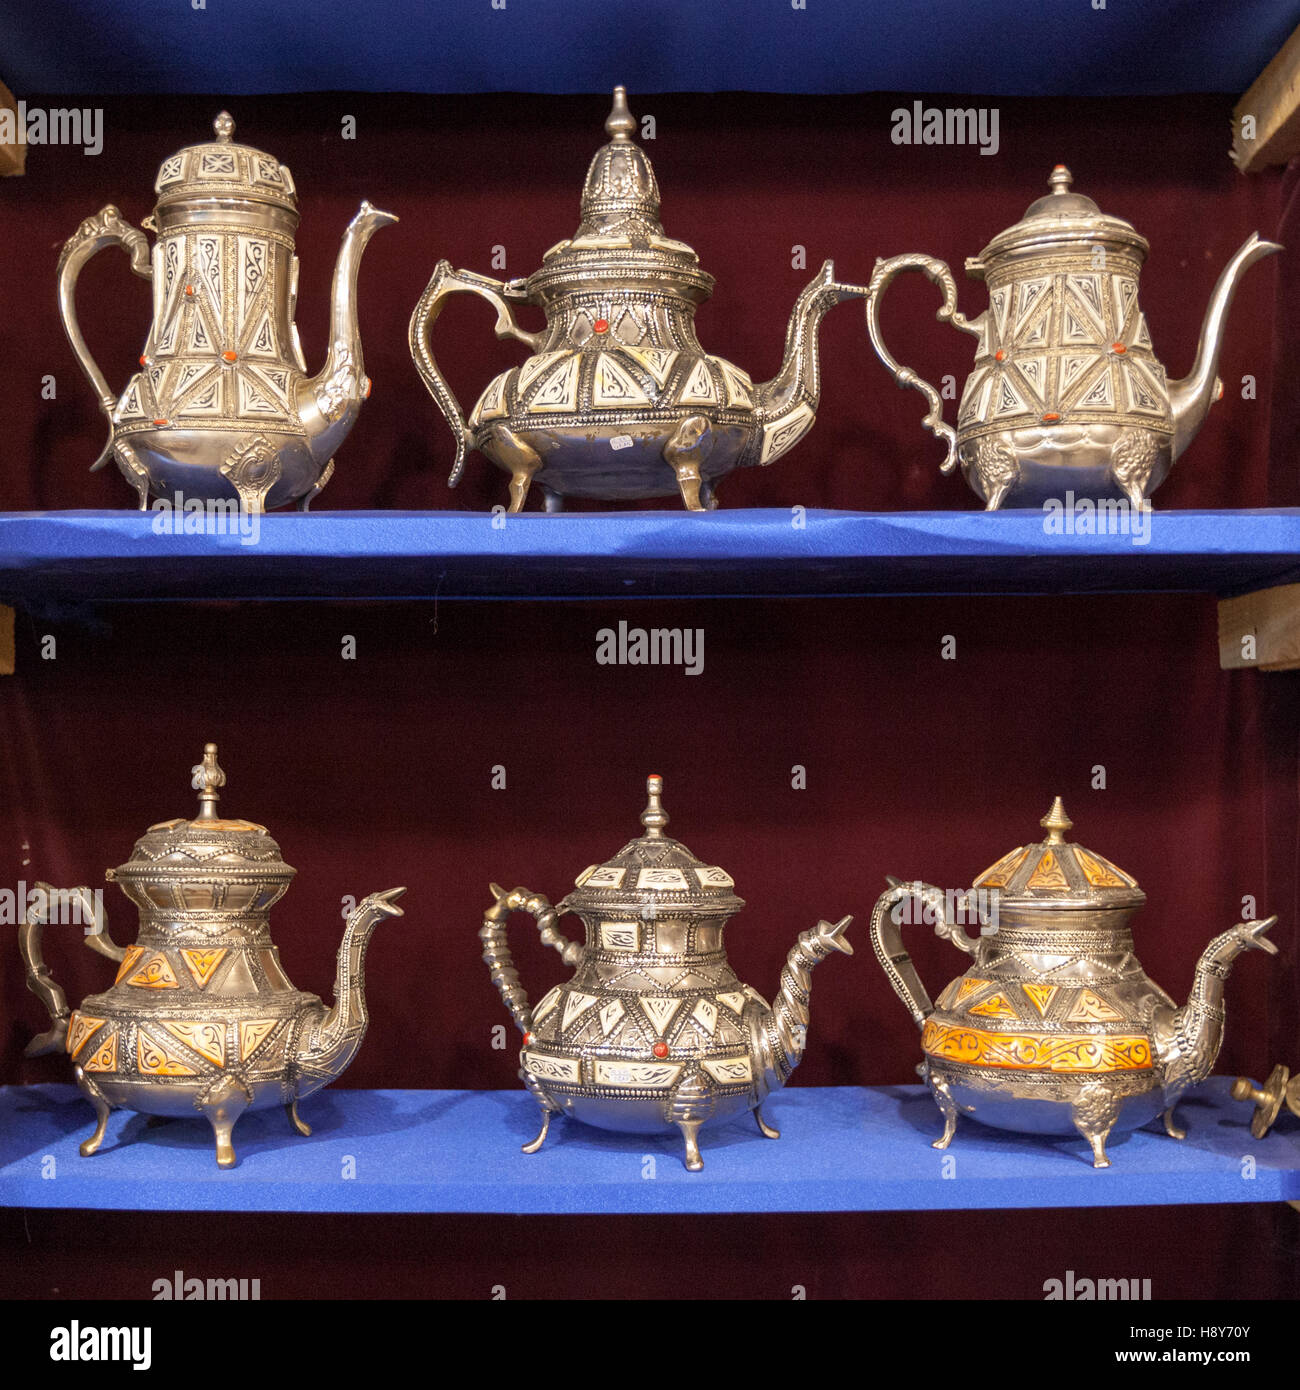 Silberne Teekannen in einem Geschäft in Marokko. Alte Handwerkskunst findet man überall in Fes Stockfoto